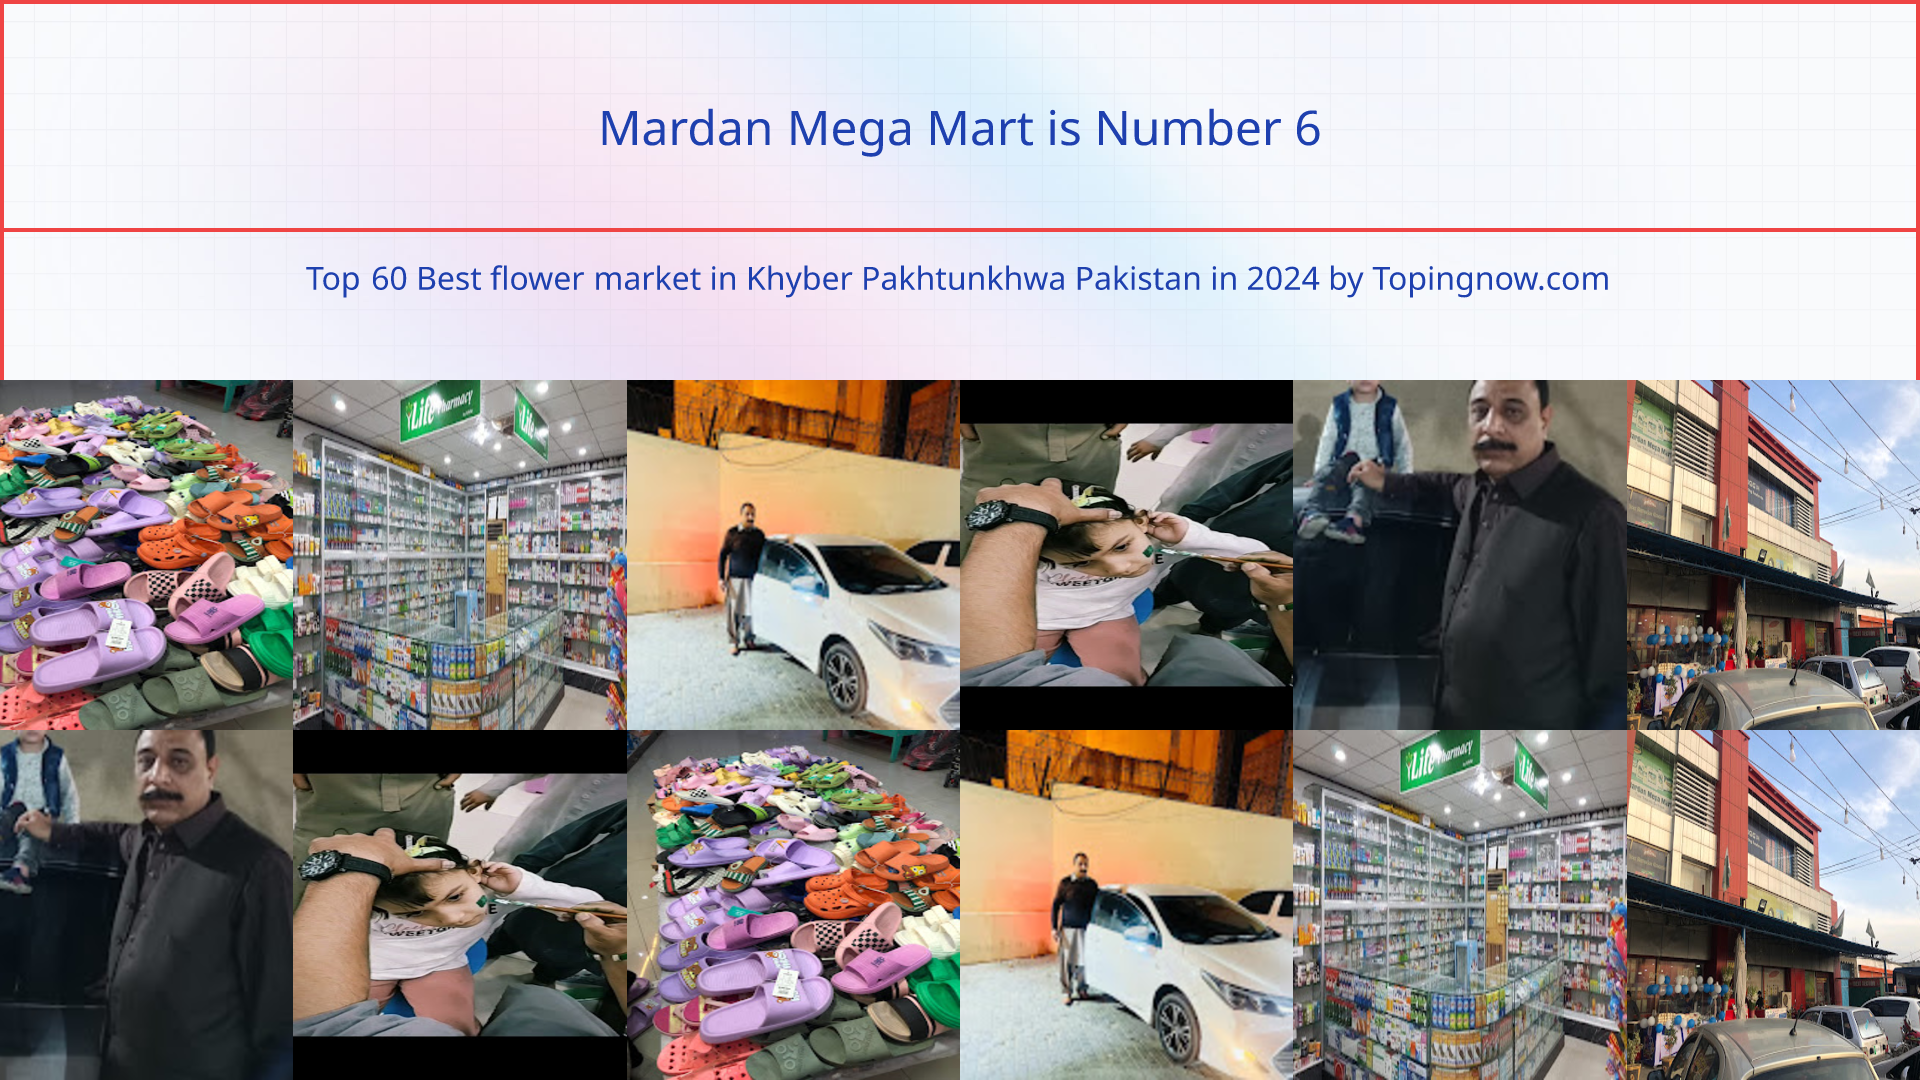 Mardan Mega Mart: Top 60 Best flower market in Khyber Pakhtunkhwa Pakistan in 2024